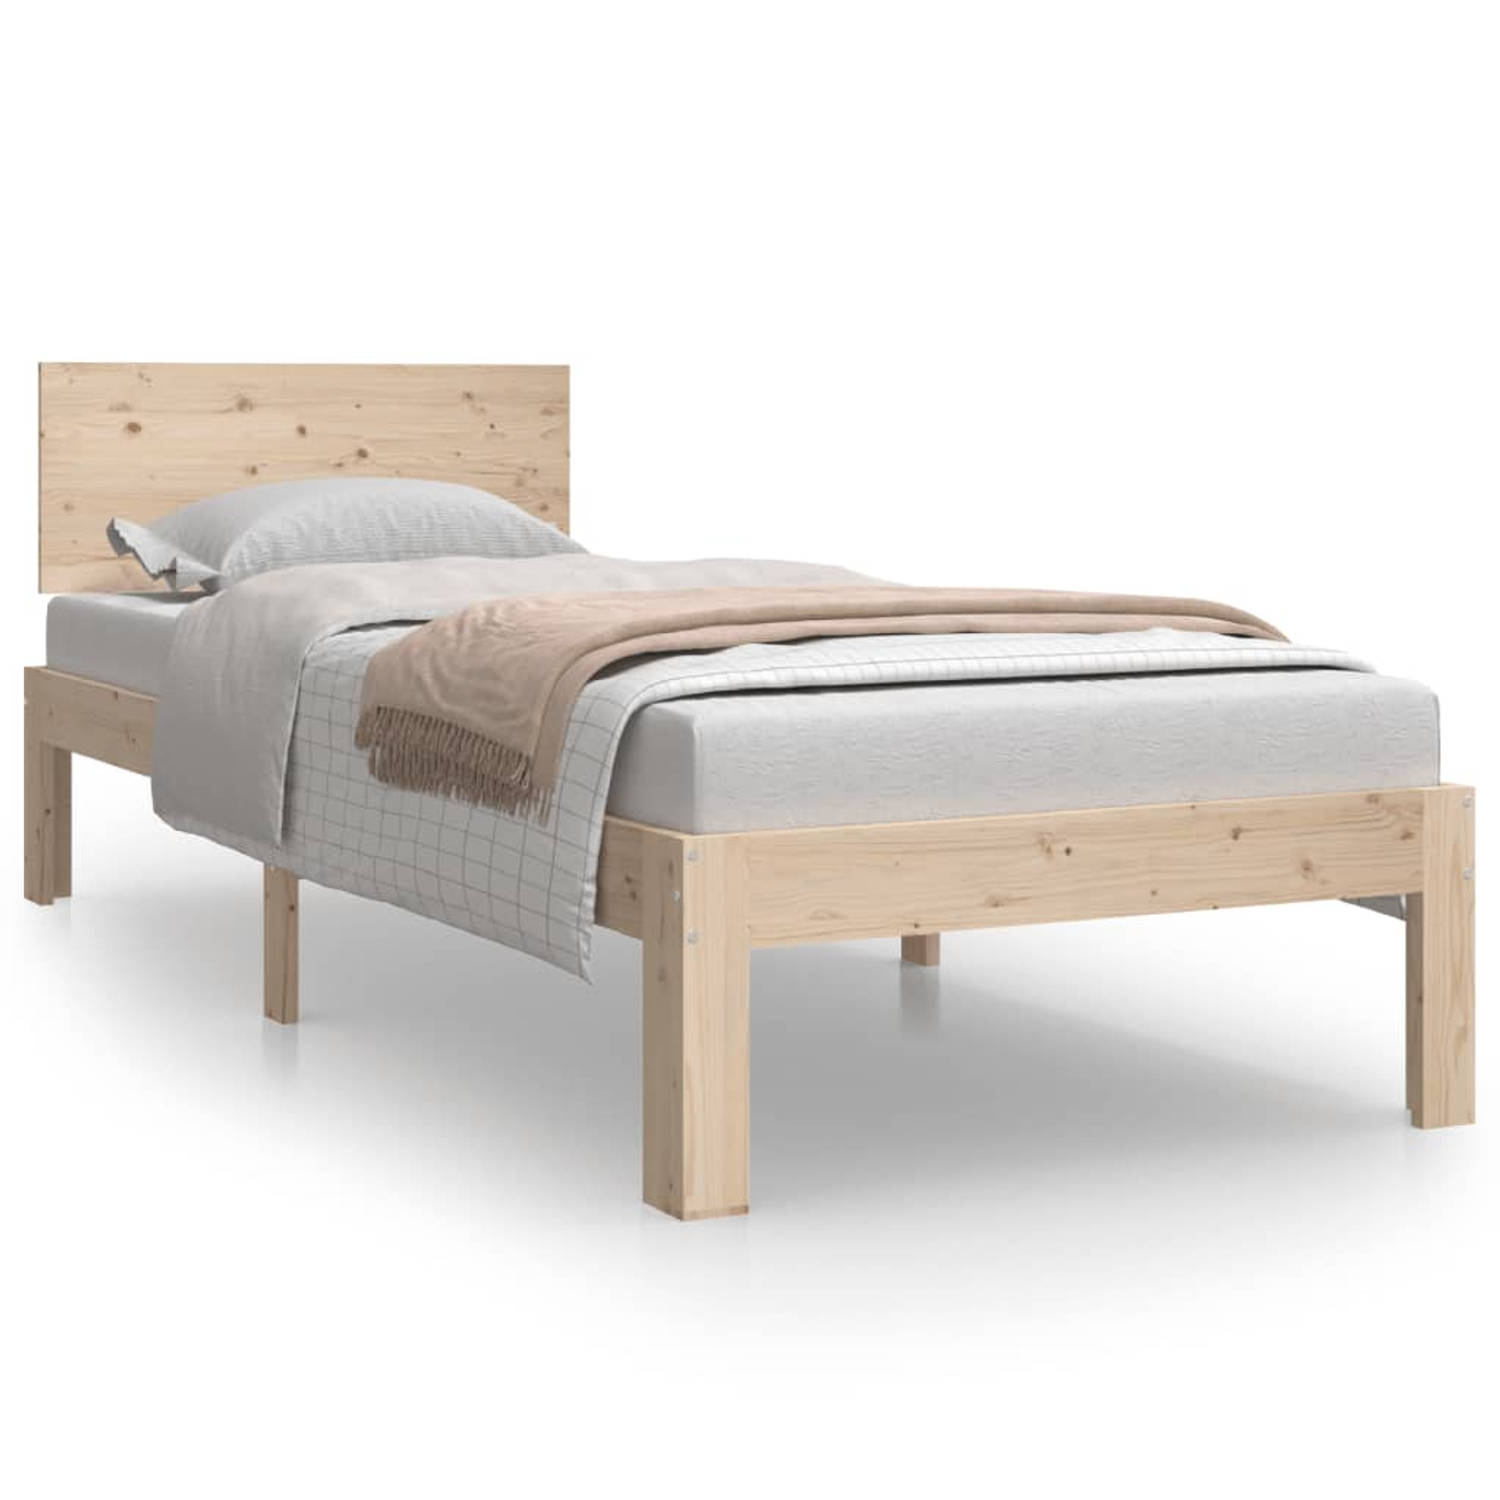 The Living Store Bedframe massief hout 75x190 cm 2FT6 Small Single - Bedframe - Bedframes - Bed - Bedbodem - Ledikant - Bed Frame - Massief Houten Bedframe - Slaapmeubel - Bedden -